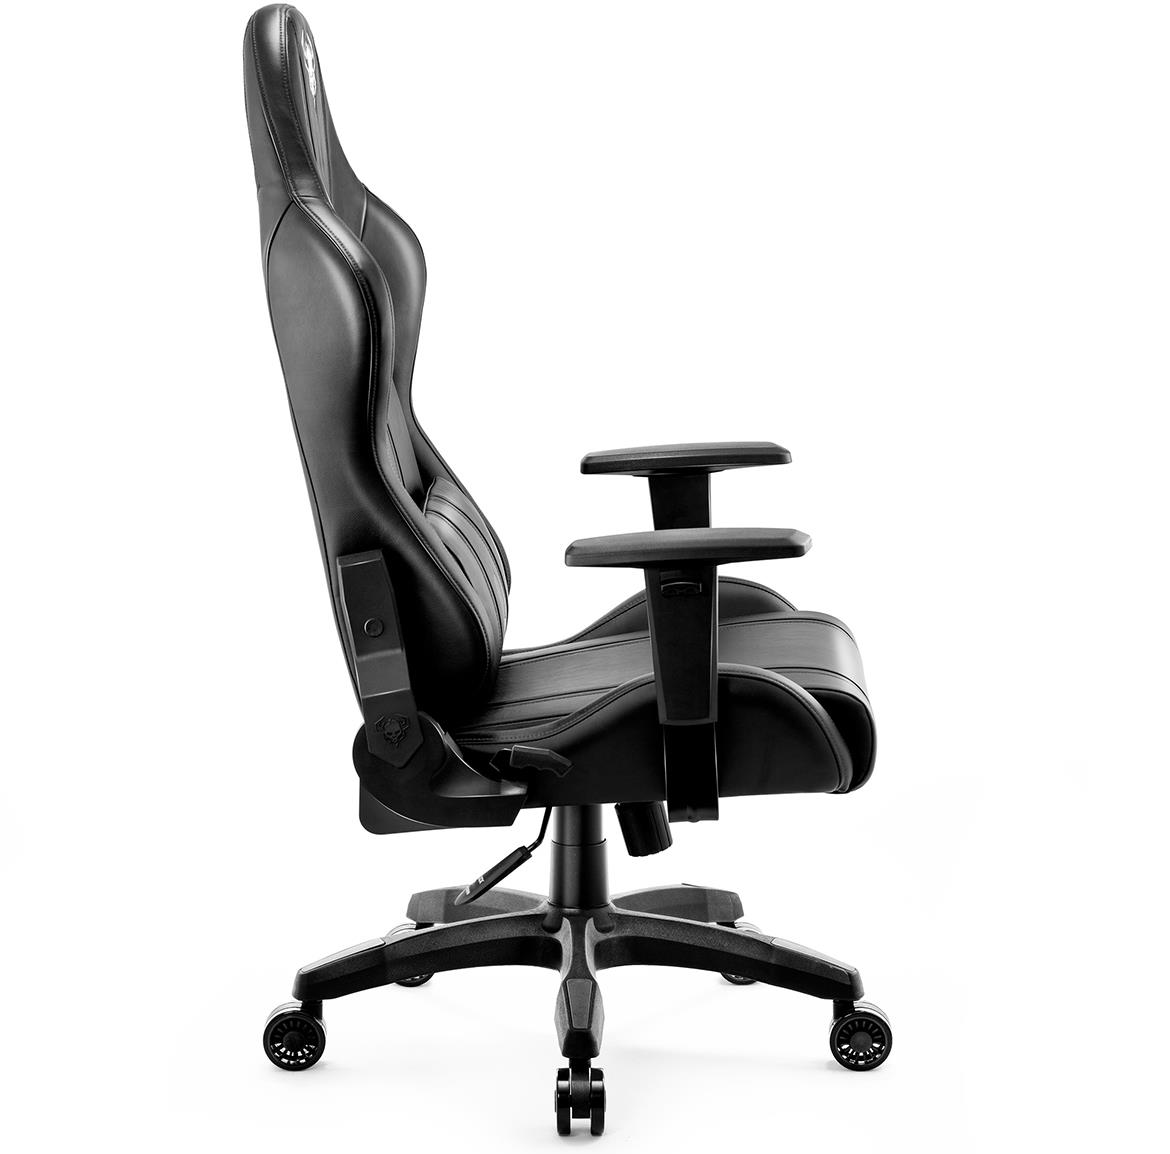 Diablo X-One 2.0 kancelarijska stolica 68x51x124 cm crna